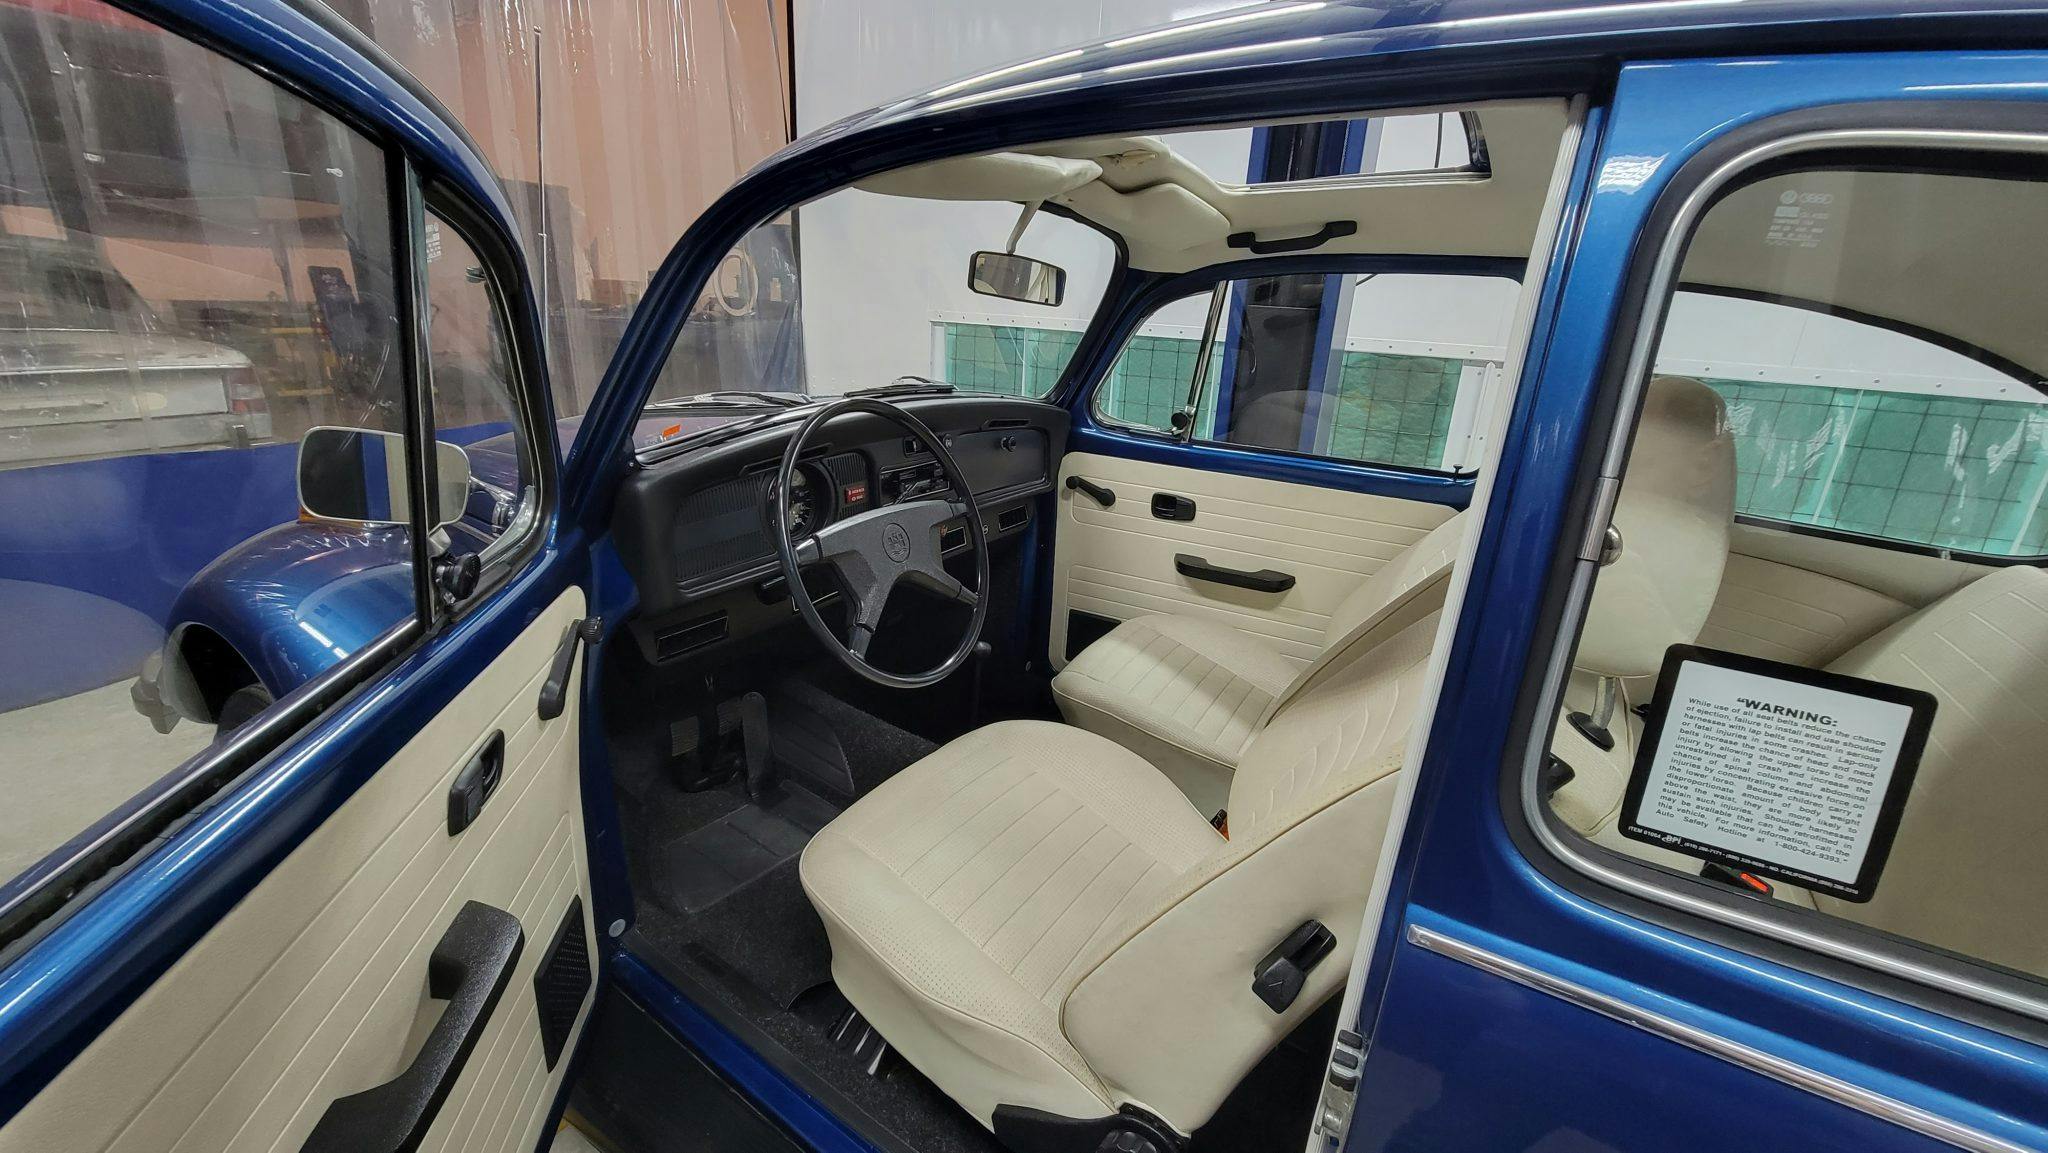 1977 Volkswagen Beetle interior